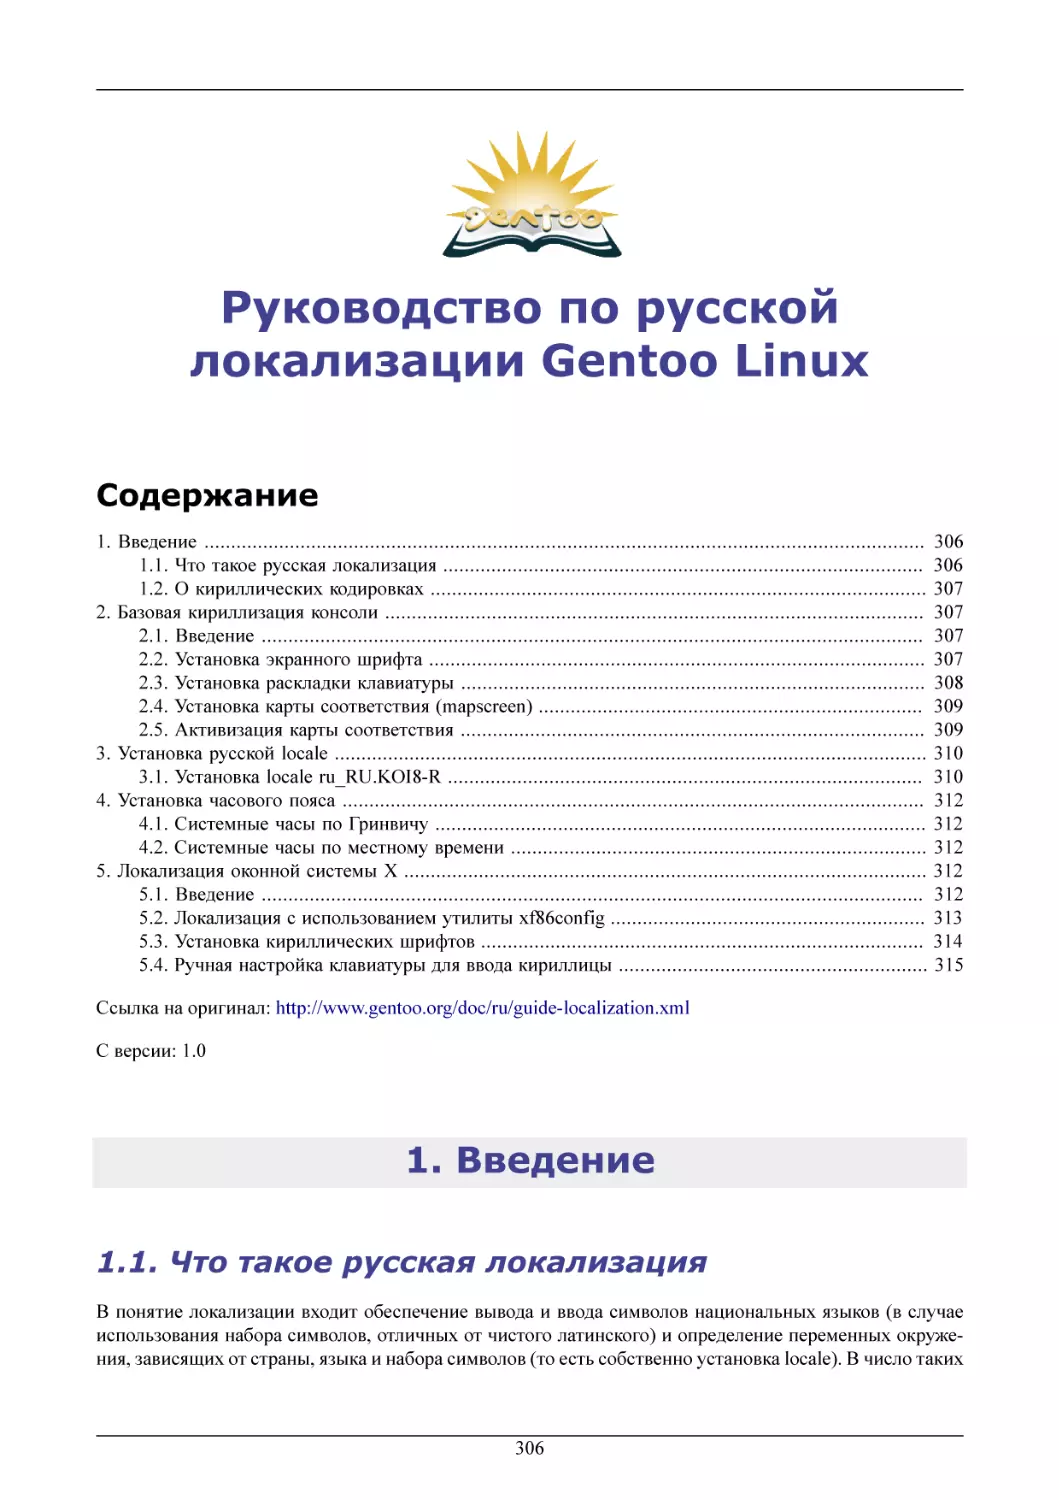 Руководство по русской локализации Gentoo Linux
Введение
Что такое русская локализация